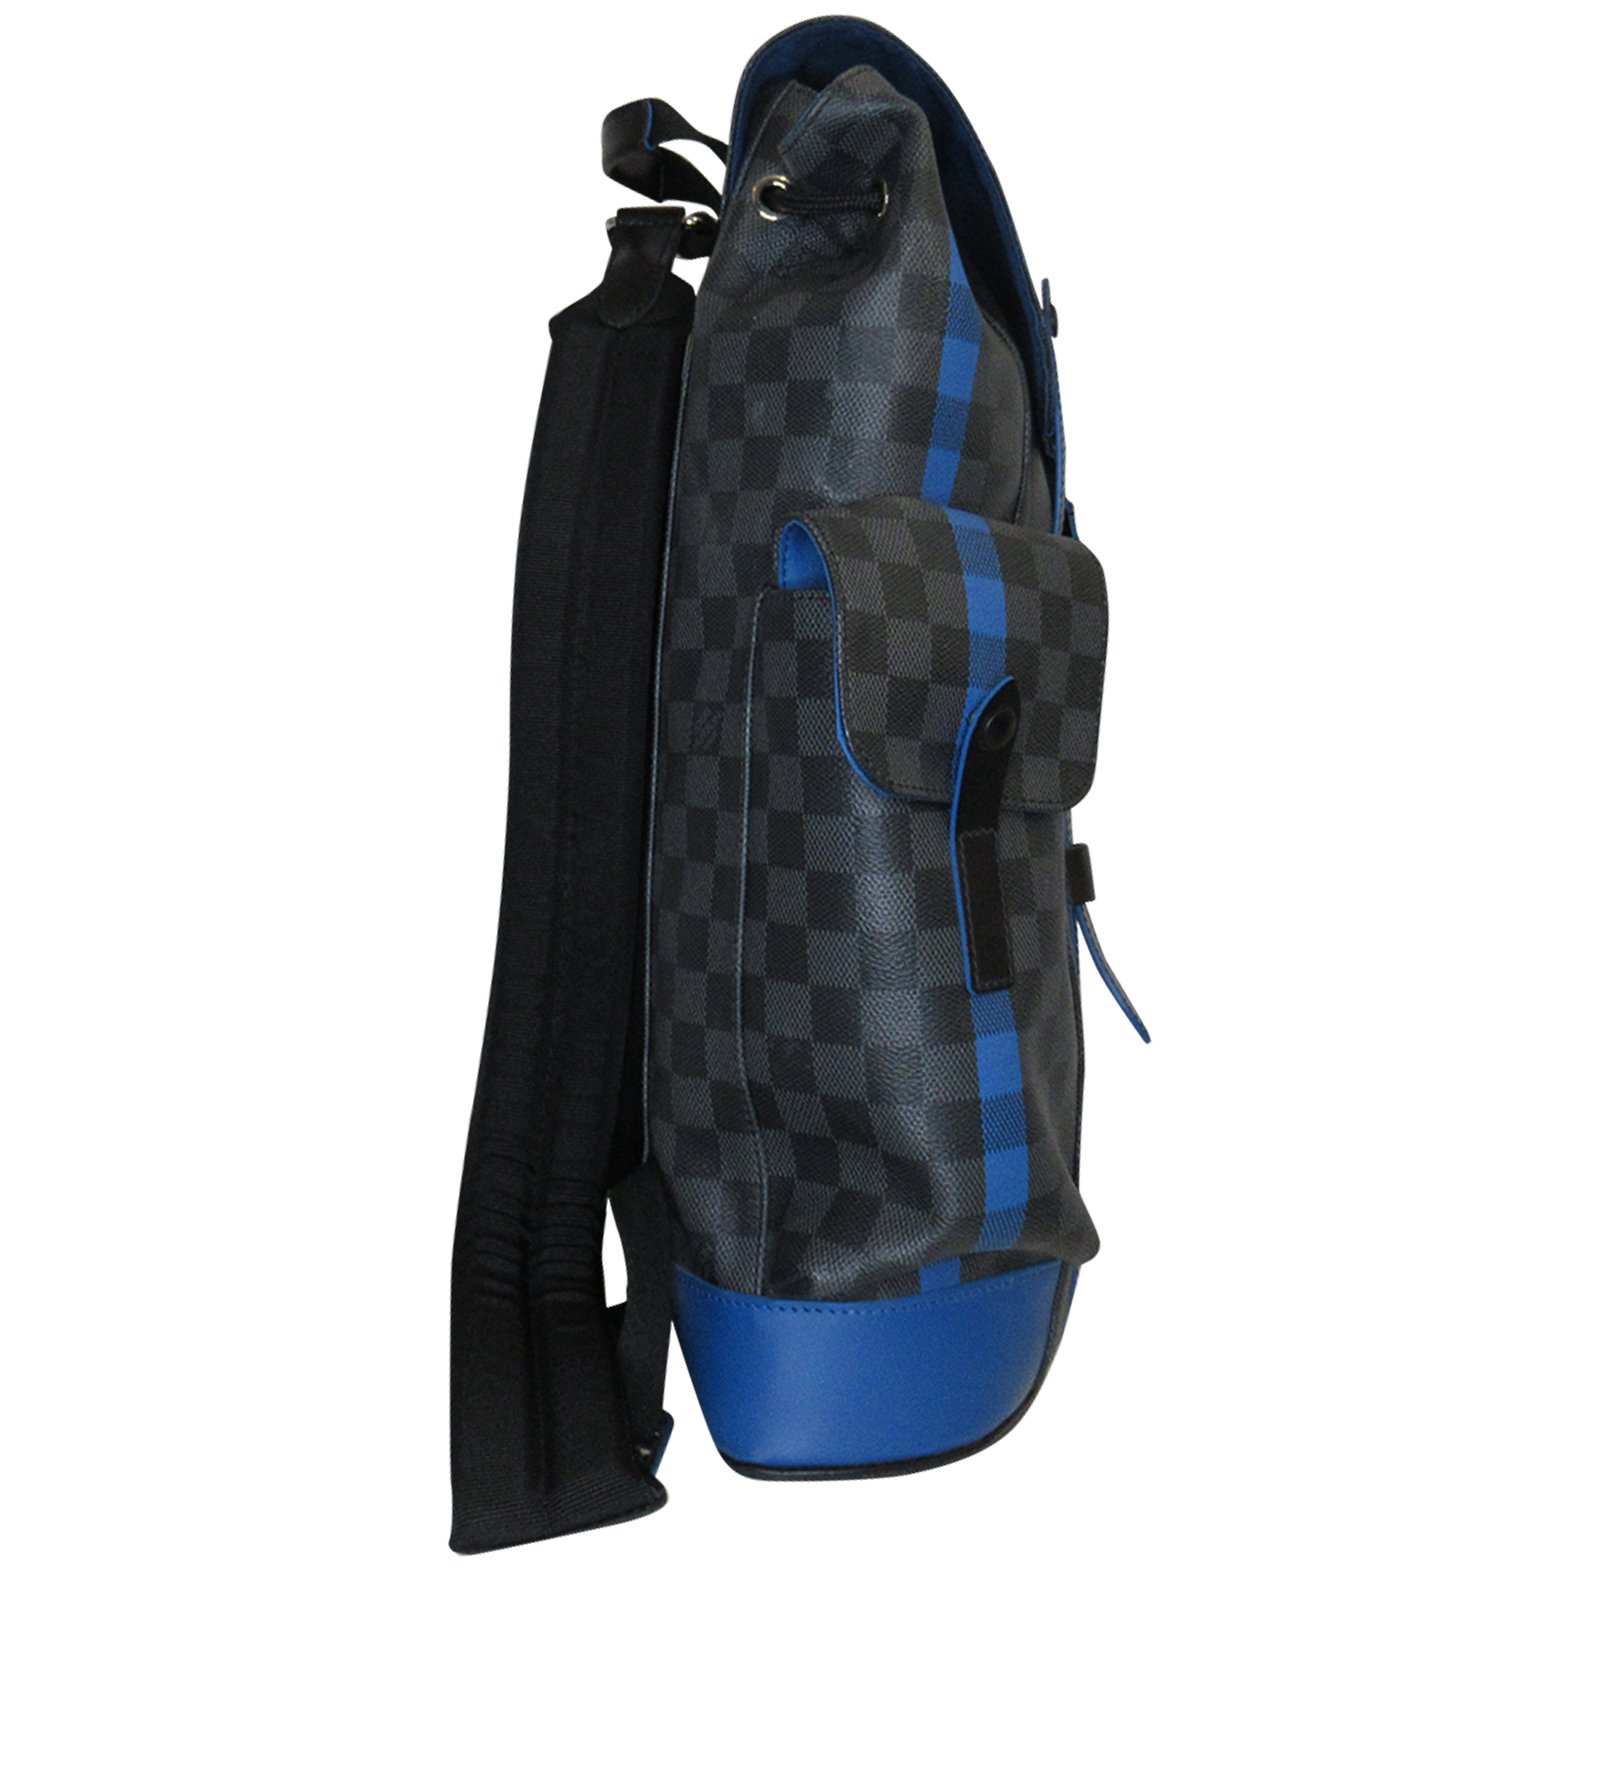 Exclusiva mochila para hombres Christopher de $81.500 por Louis Vuitton -  Mega Ricos